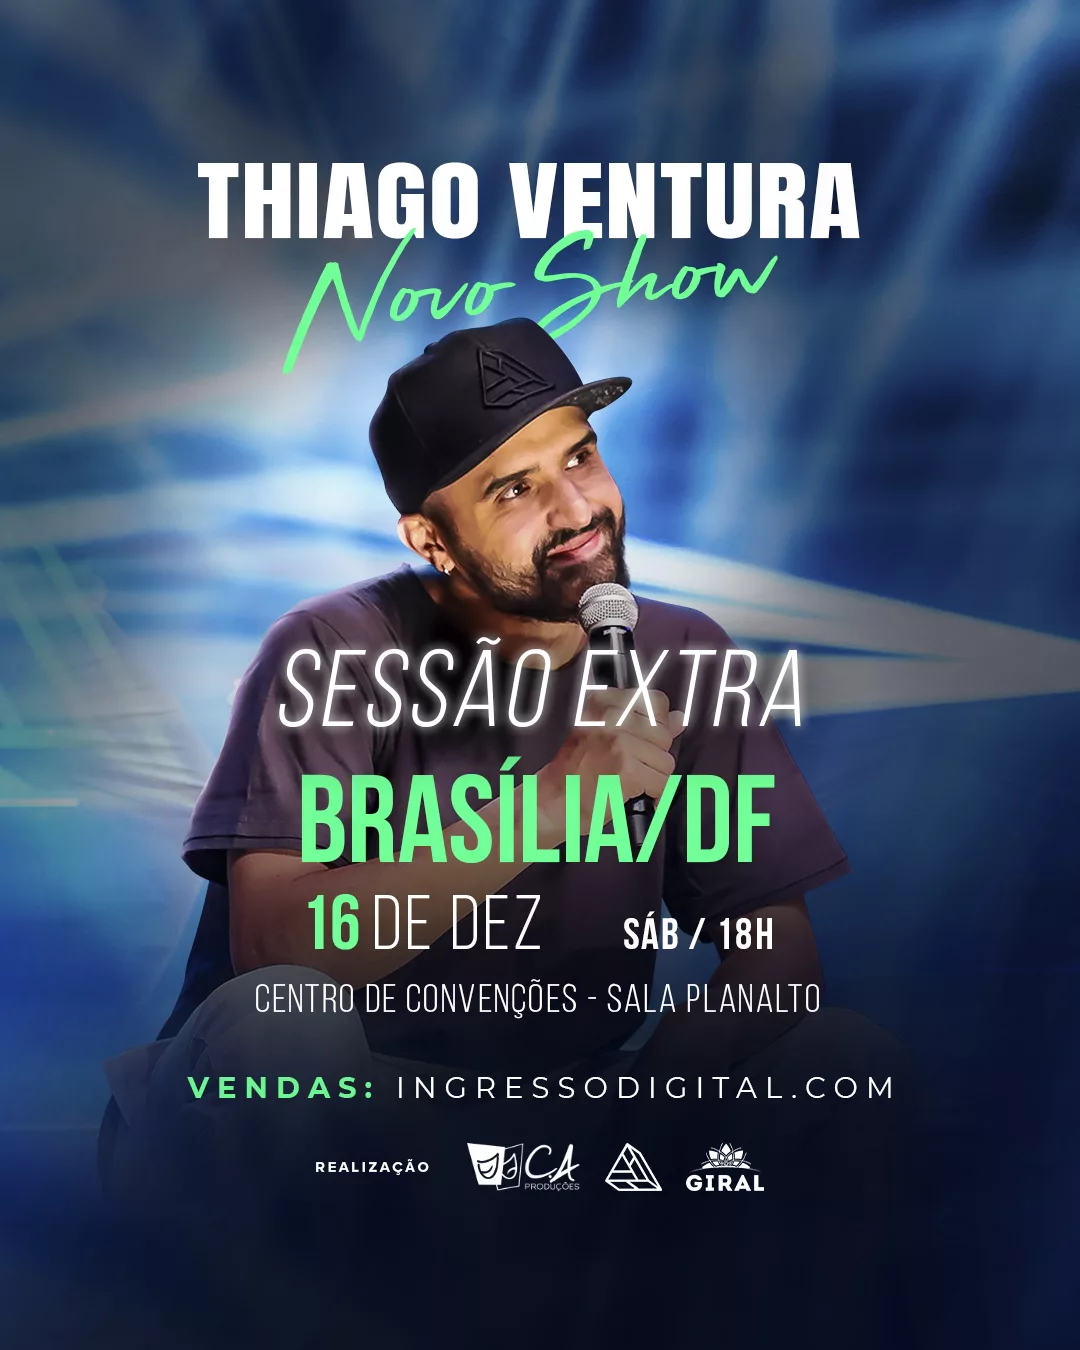 Thiago Ventura com show inédito, neste sábado em Brasília!